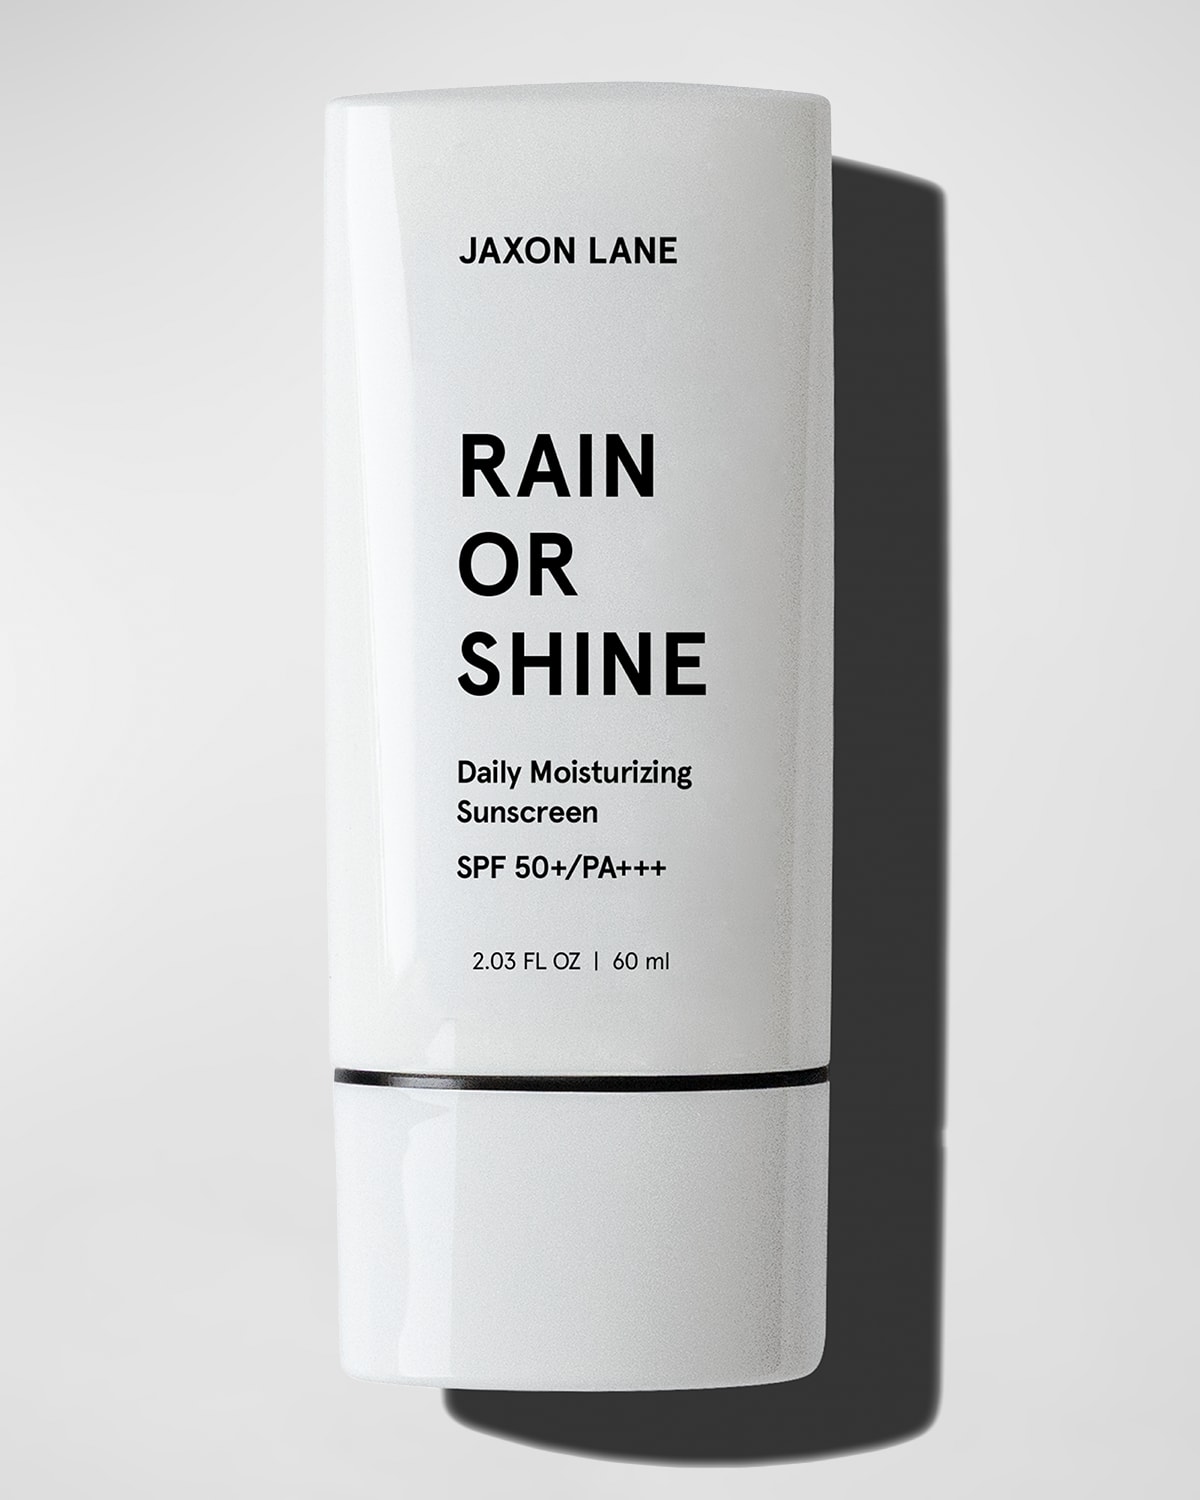 Jaxon Lane Rain or Shine Daily Moisturizing Sunscreen with SPF 50, 2.03 oz.